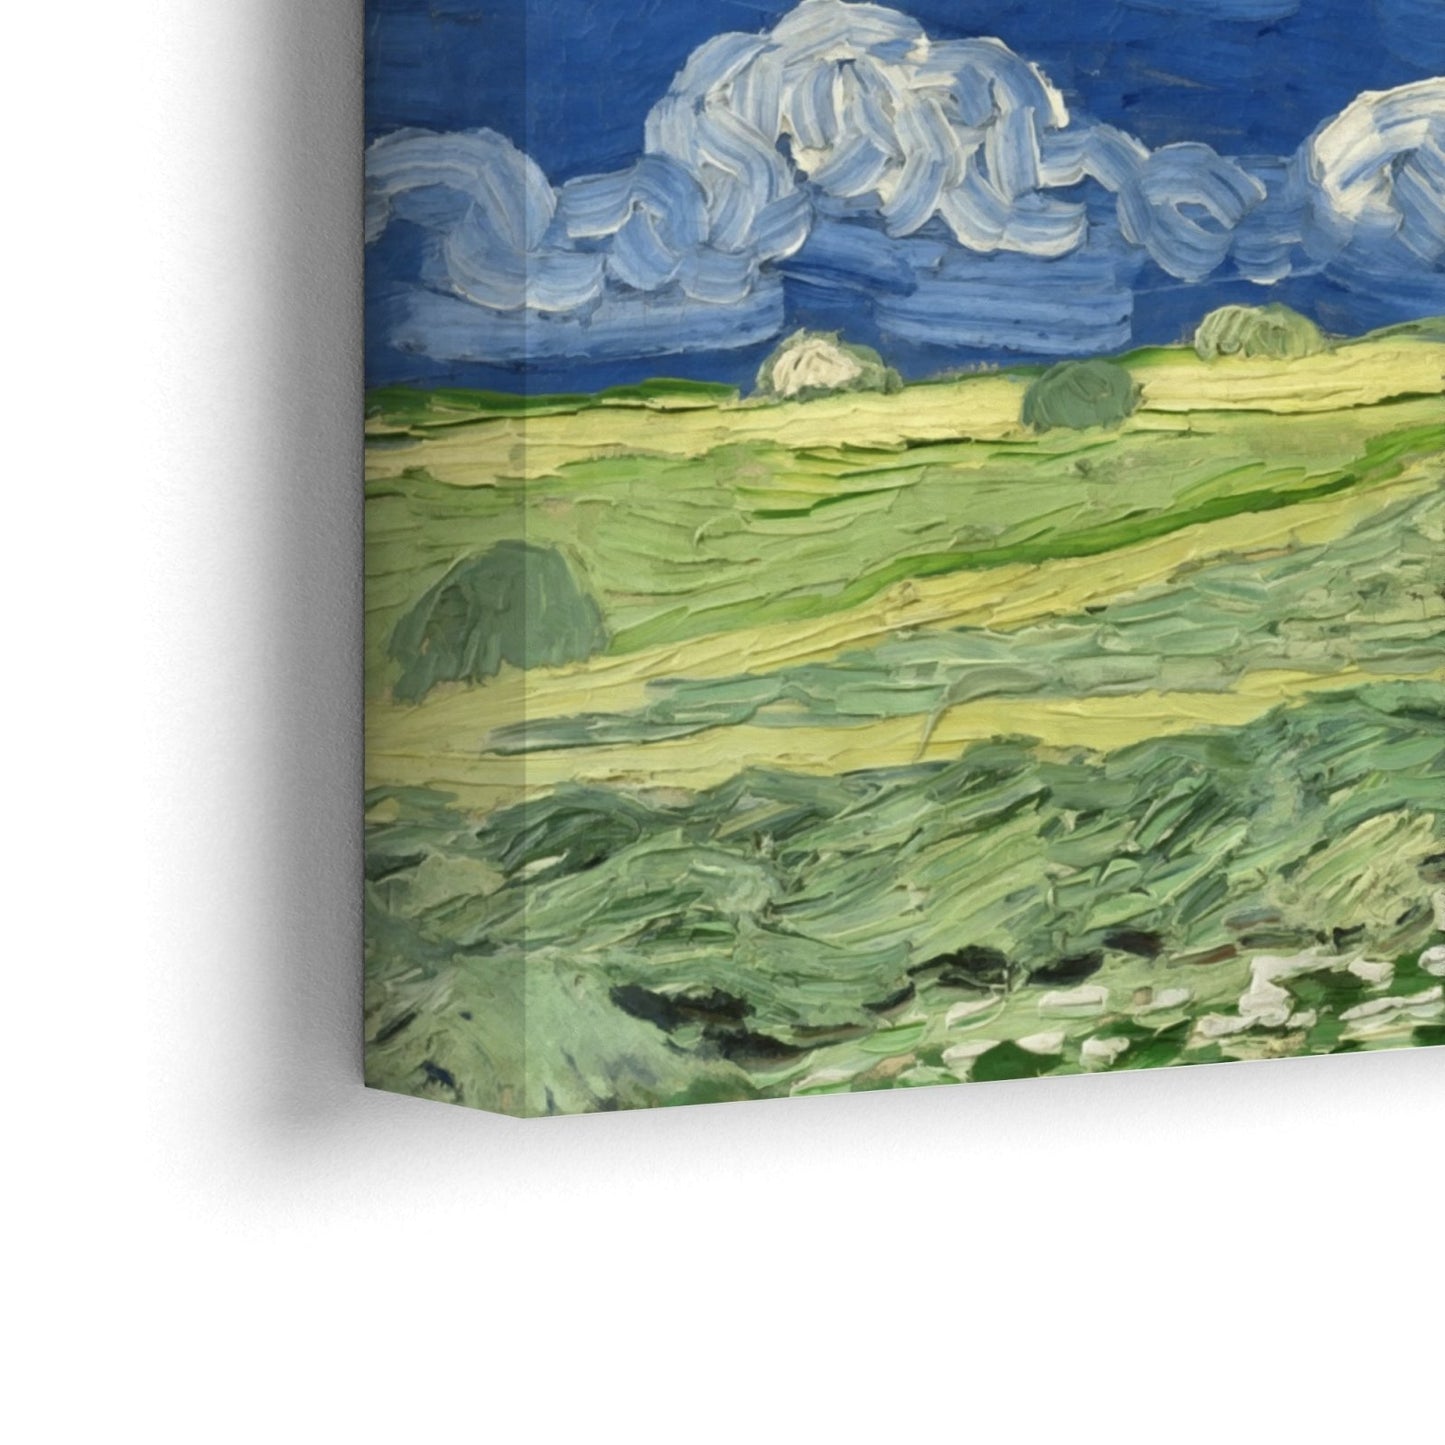 Wheatfields Under Thunderclouds, Vincent Van Gogh